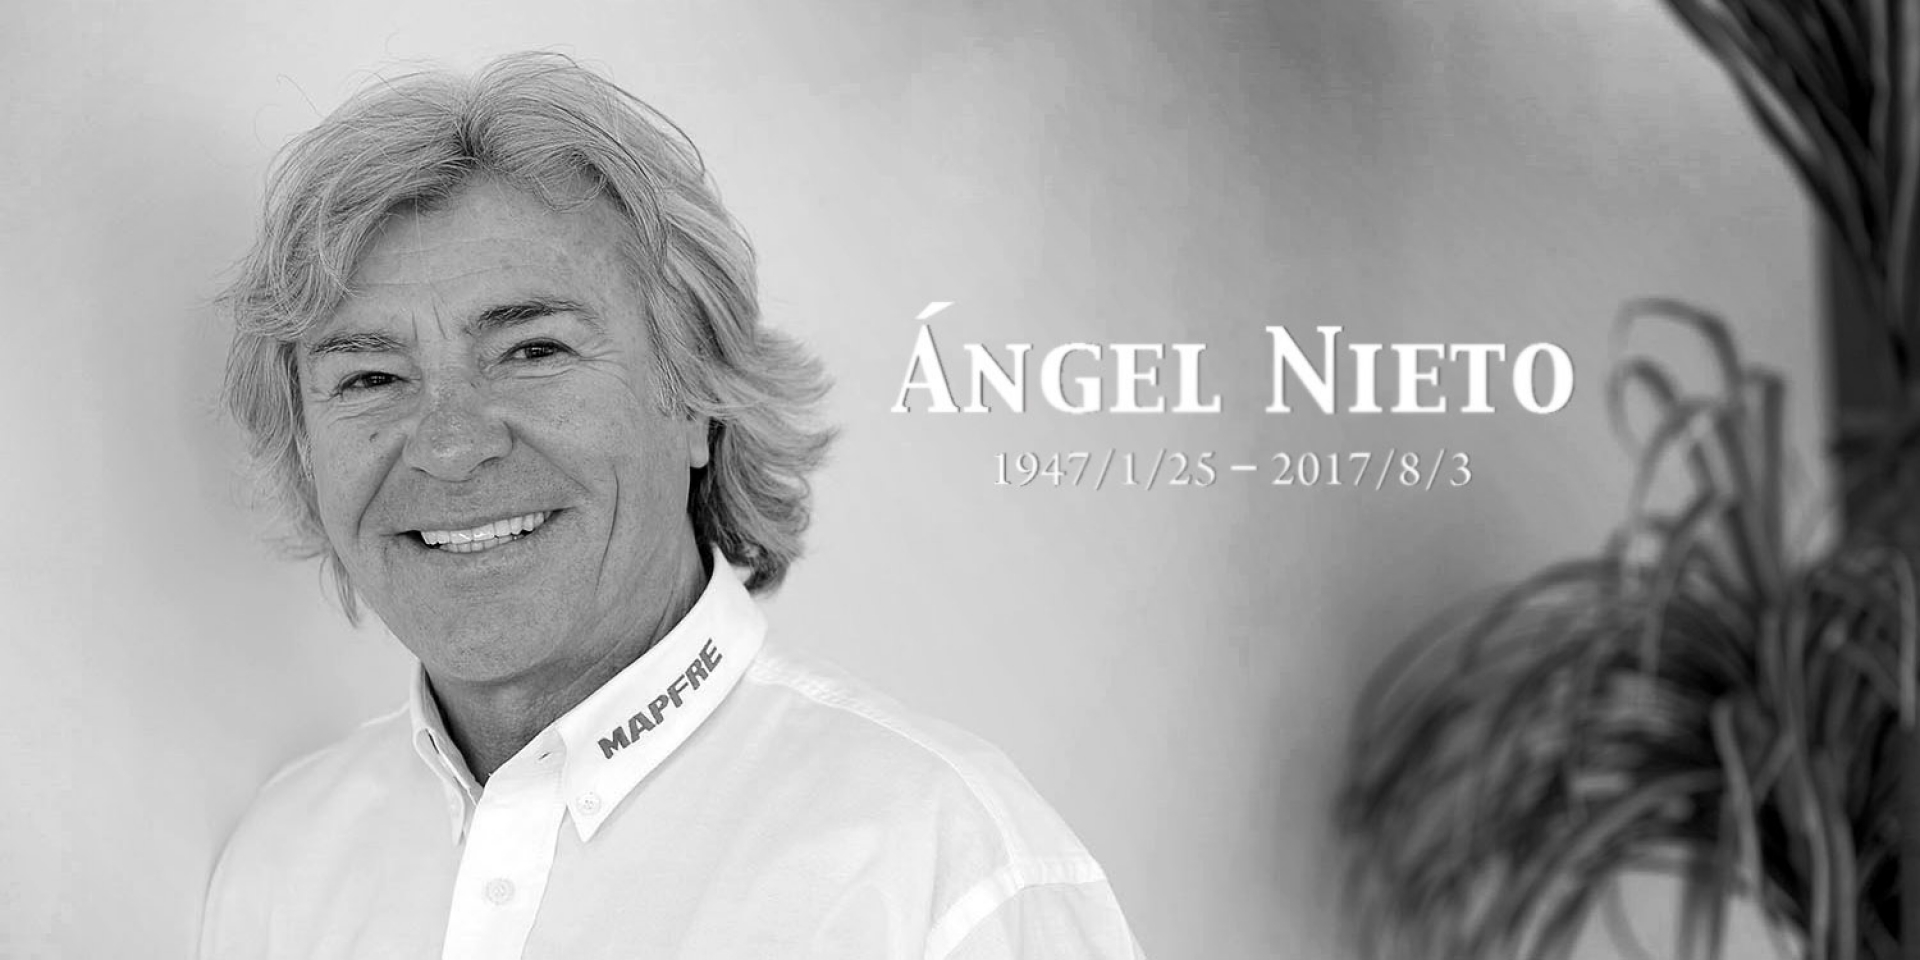 傳奇巨星殞落。西班牙英雄Angel Nieto離世